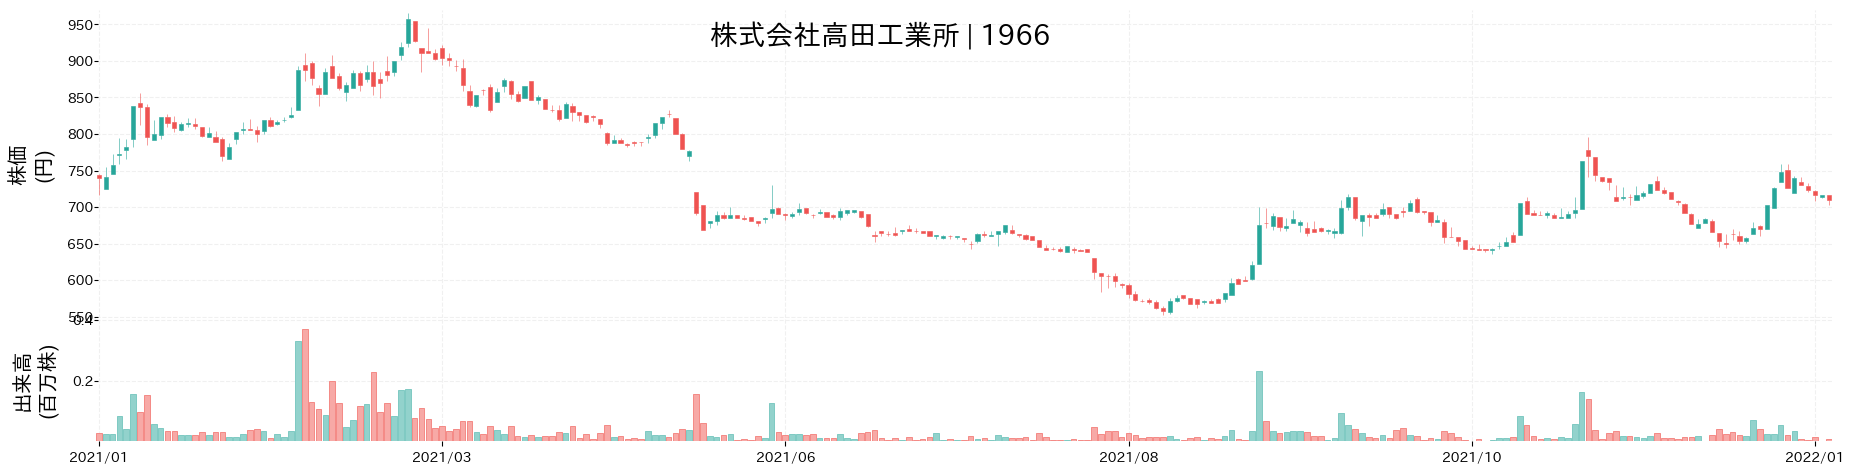 高田工業所の株価推移(2021)